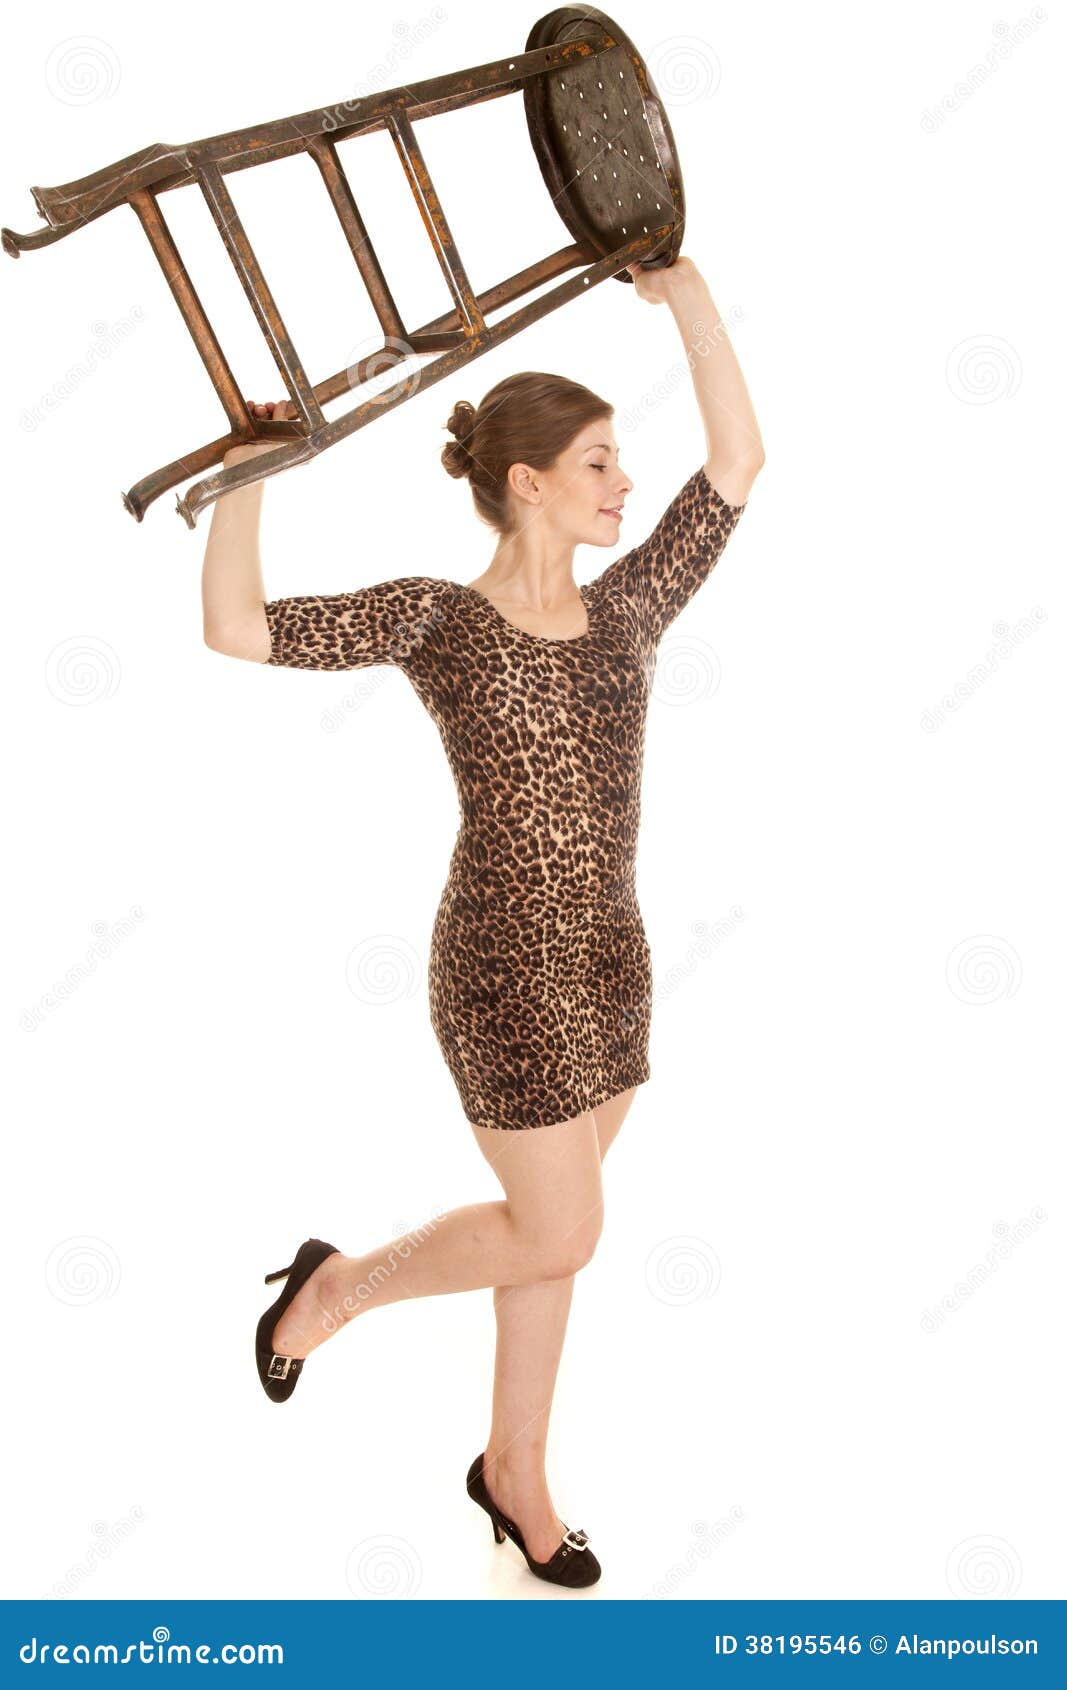 woman-leopard-dress-hold-chair-up-leg-up